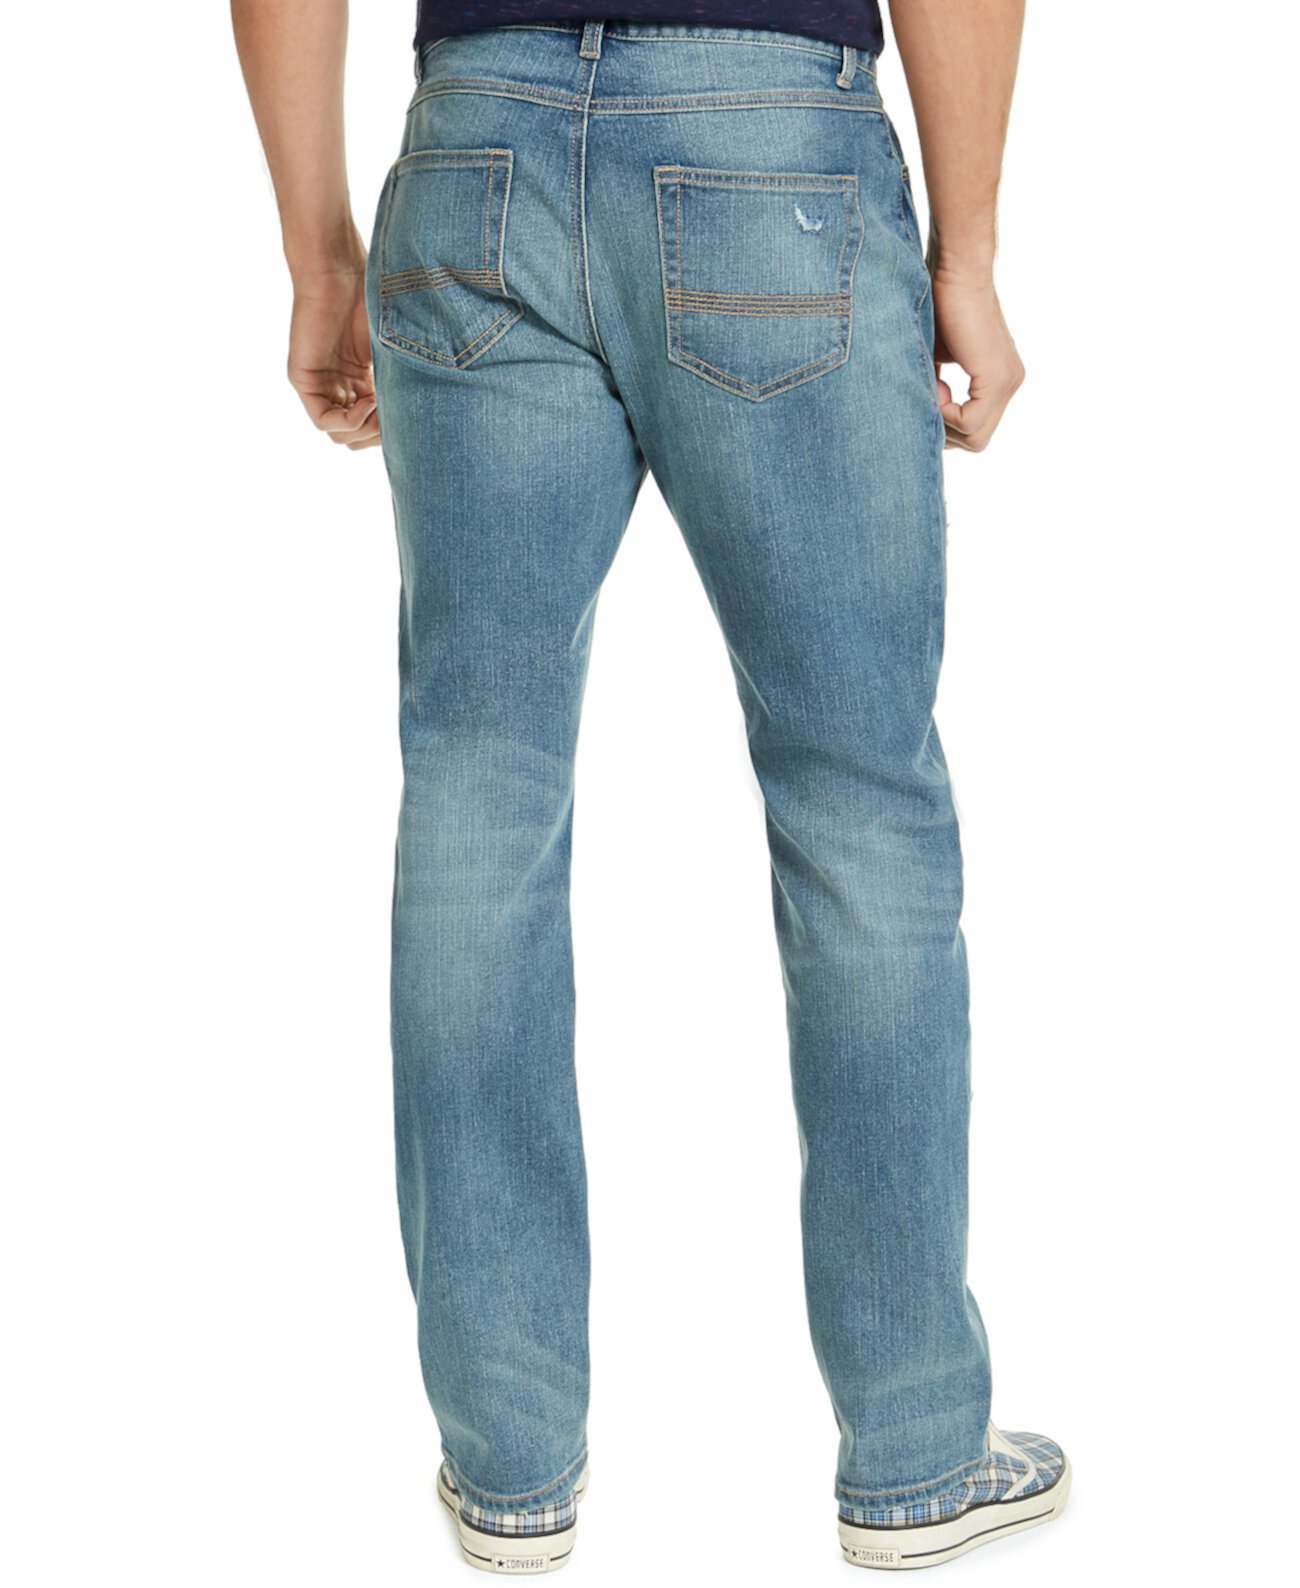 Мужские джинсы Knickerbocker прямого кроя, созданные для Macy's Sun & Stone